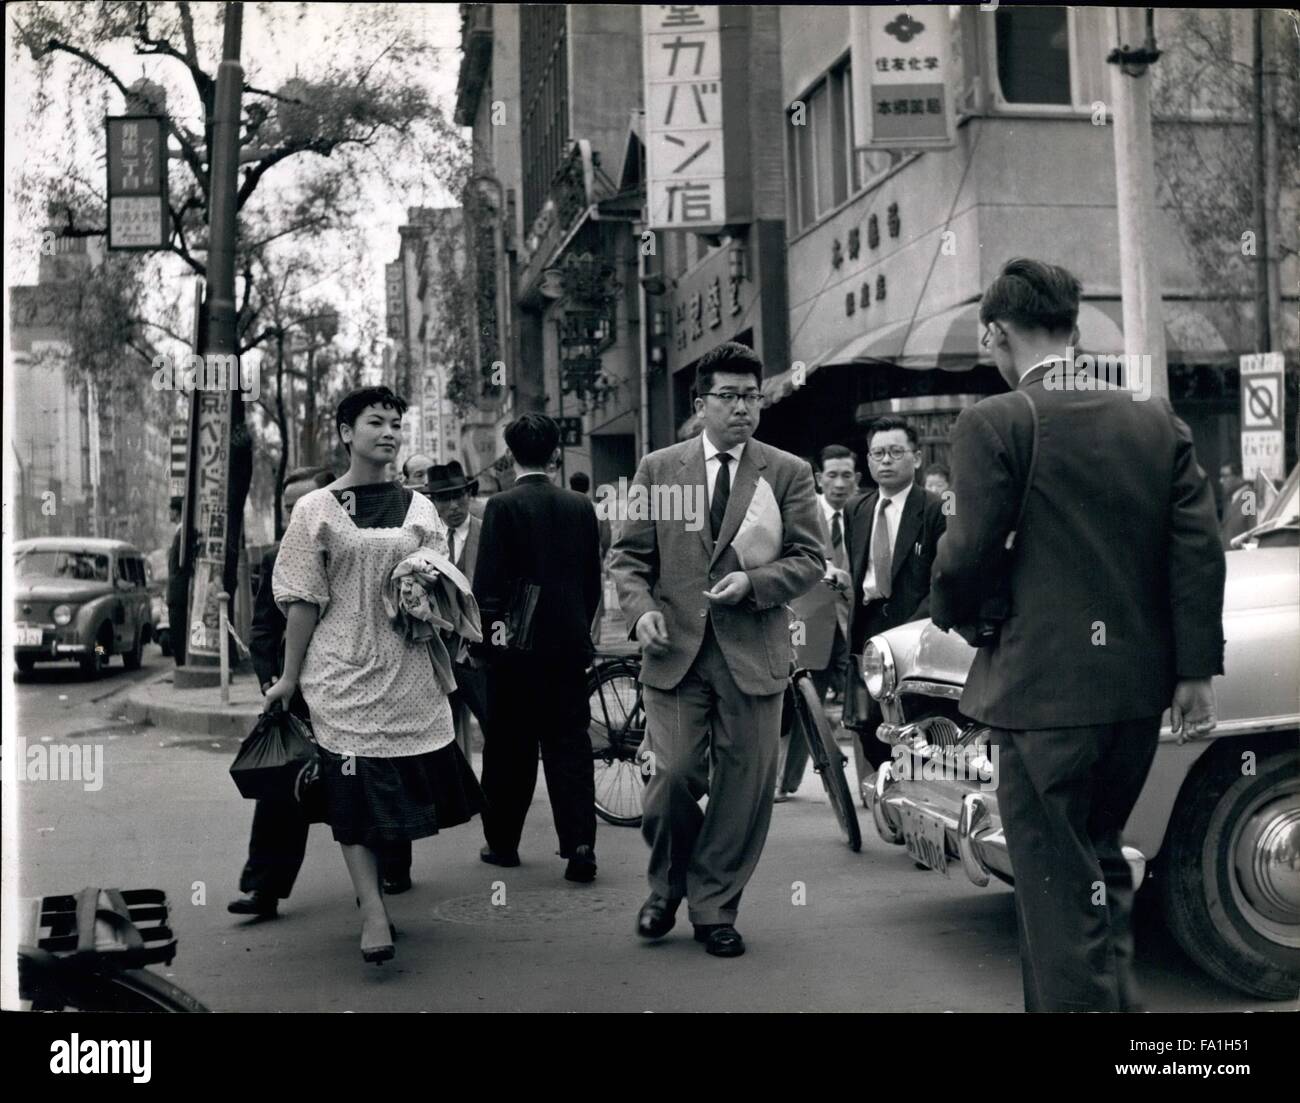 1964 - Toshie Higuchi macht ihren Weg durch die belebten Straßen von Tokio, tragen ihre Schuhputz-Box auf der Seite wo sie einrichtet und fängt der Carry Trade Business. Toshie Schuh scheint lieber Modellierung: Tokios schönsten Schuh-schwarz lehnt alle Angebote. Toshie Higughi sagt sie weiß alles über Männer - aus ihren Schuhen. Sie sollten wissen, weil sie ihnen - mit der männliche Füße in ihnen - den ganzen Tag reinigt. Toshie, mit 23 Jahren, hält sich durch die Arbeit hart, mit viel Fett Ellenbogen und ein Maß an ihrem eigenen natürlichen Charme und She Wo Lon't ändern ihren Job für den Tee In Chi Stockfoto